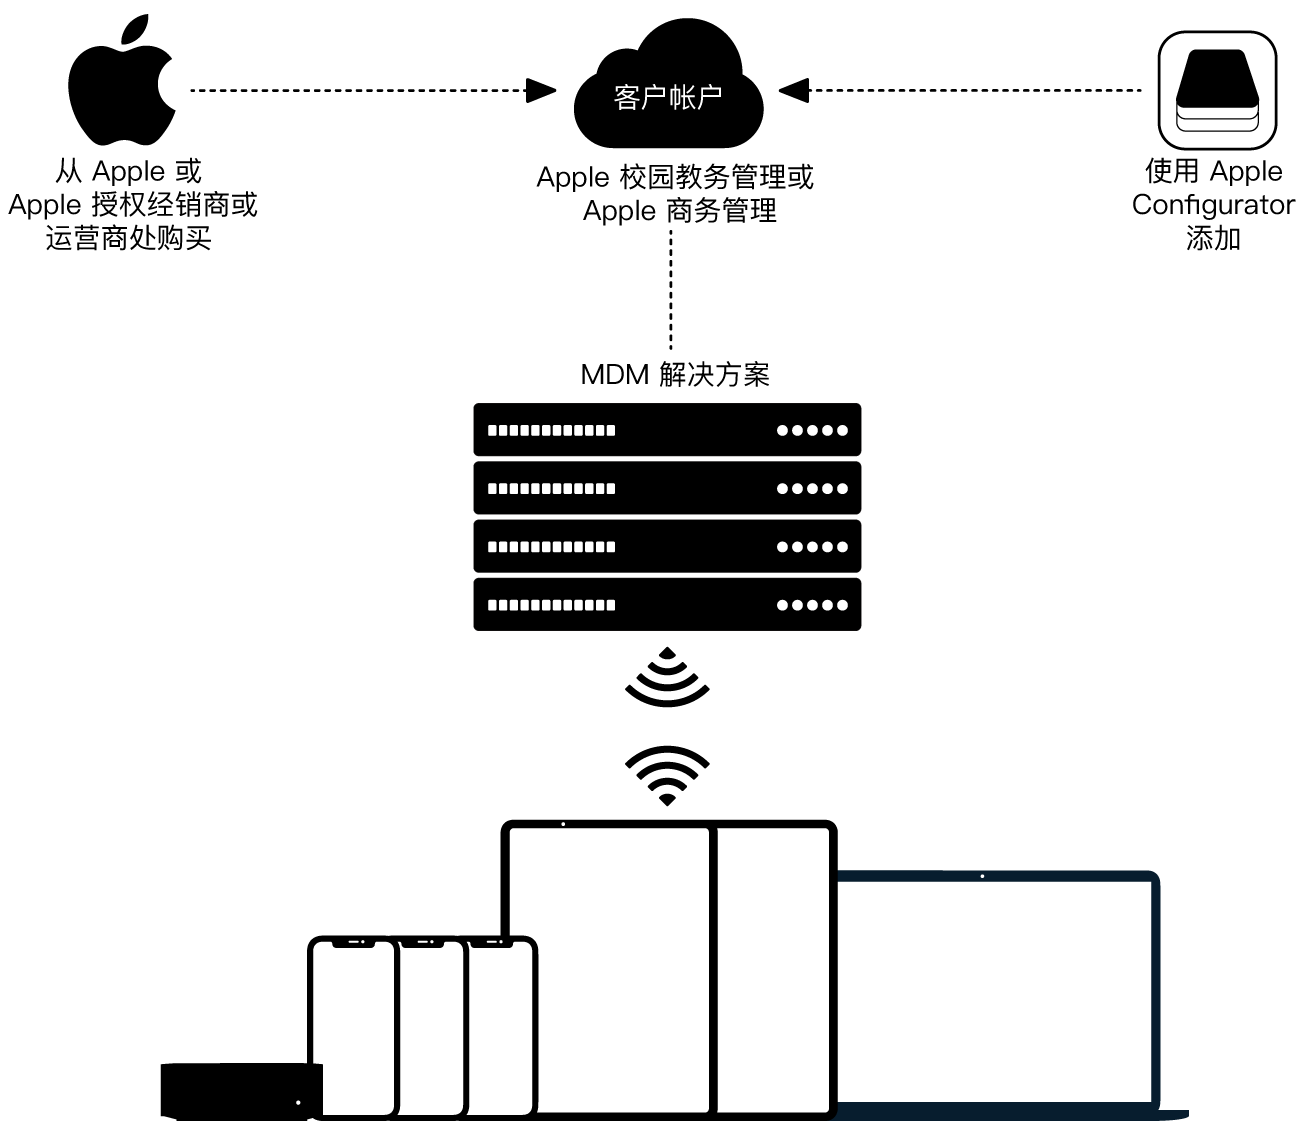 图表显示设备如何分配到“Apple 校园教务管理”或“Apple 商务管理”。